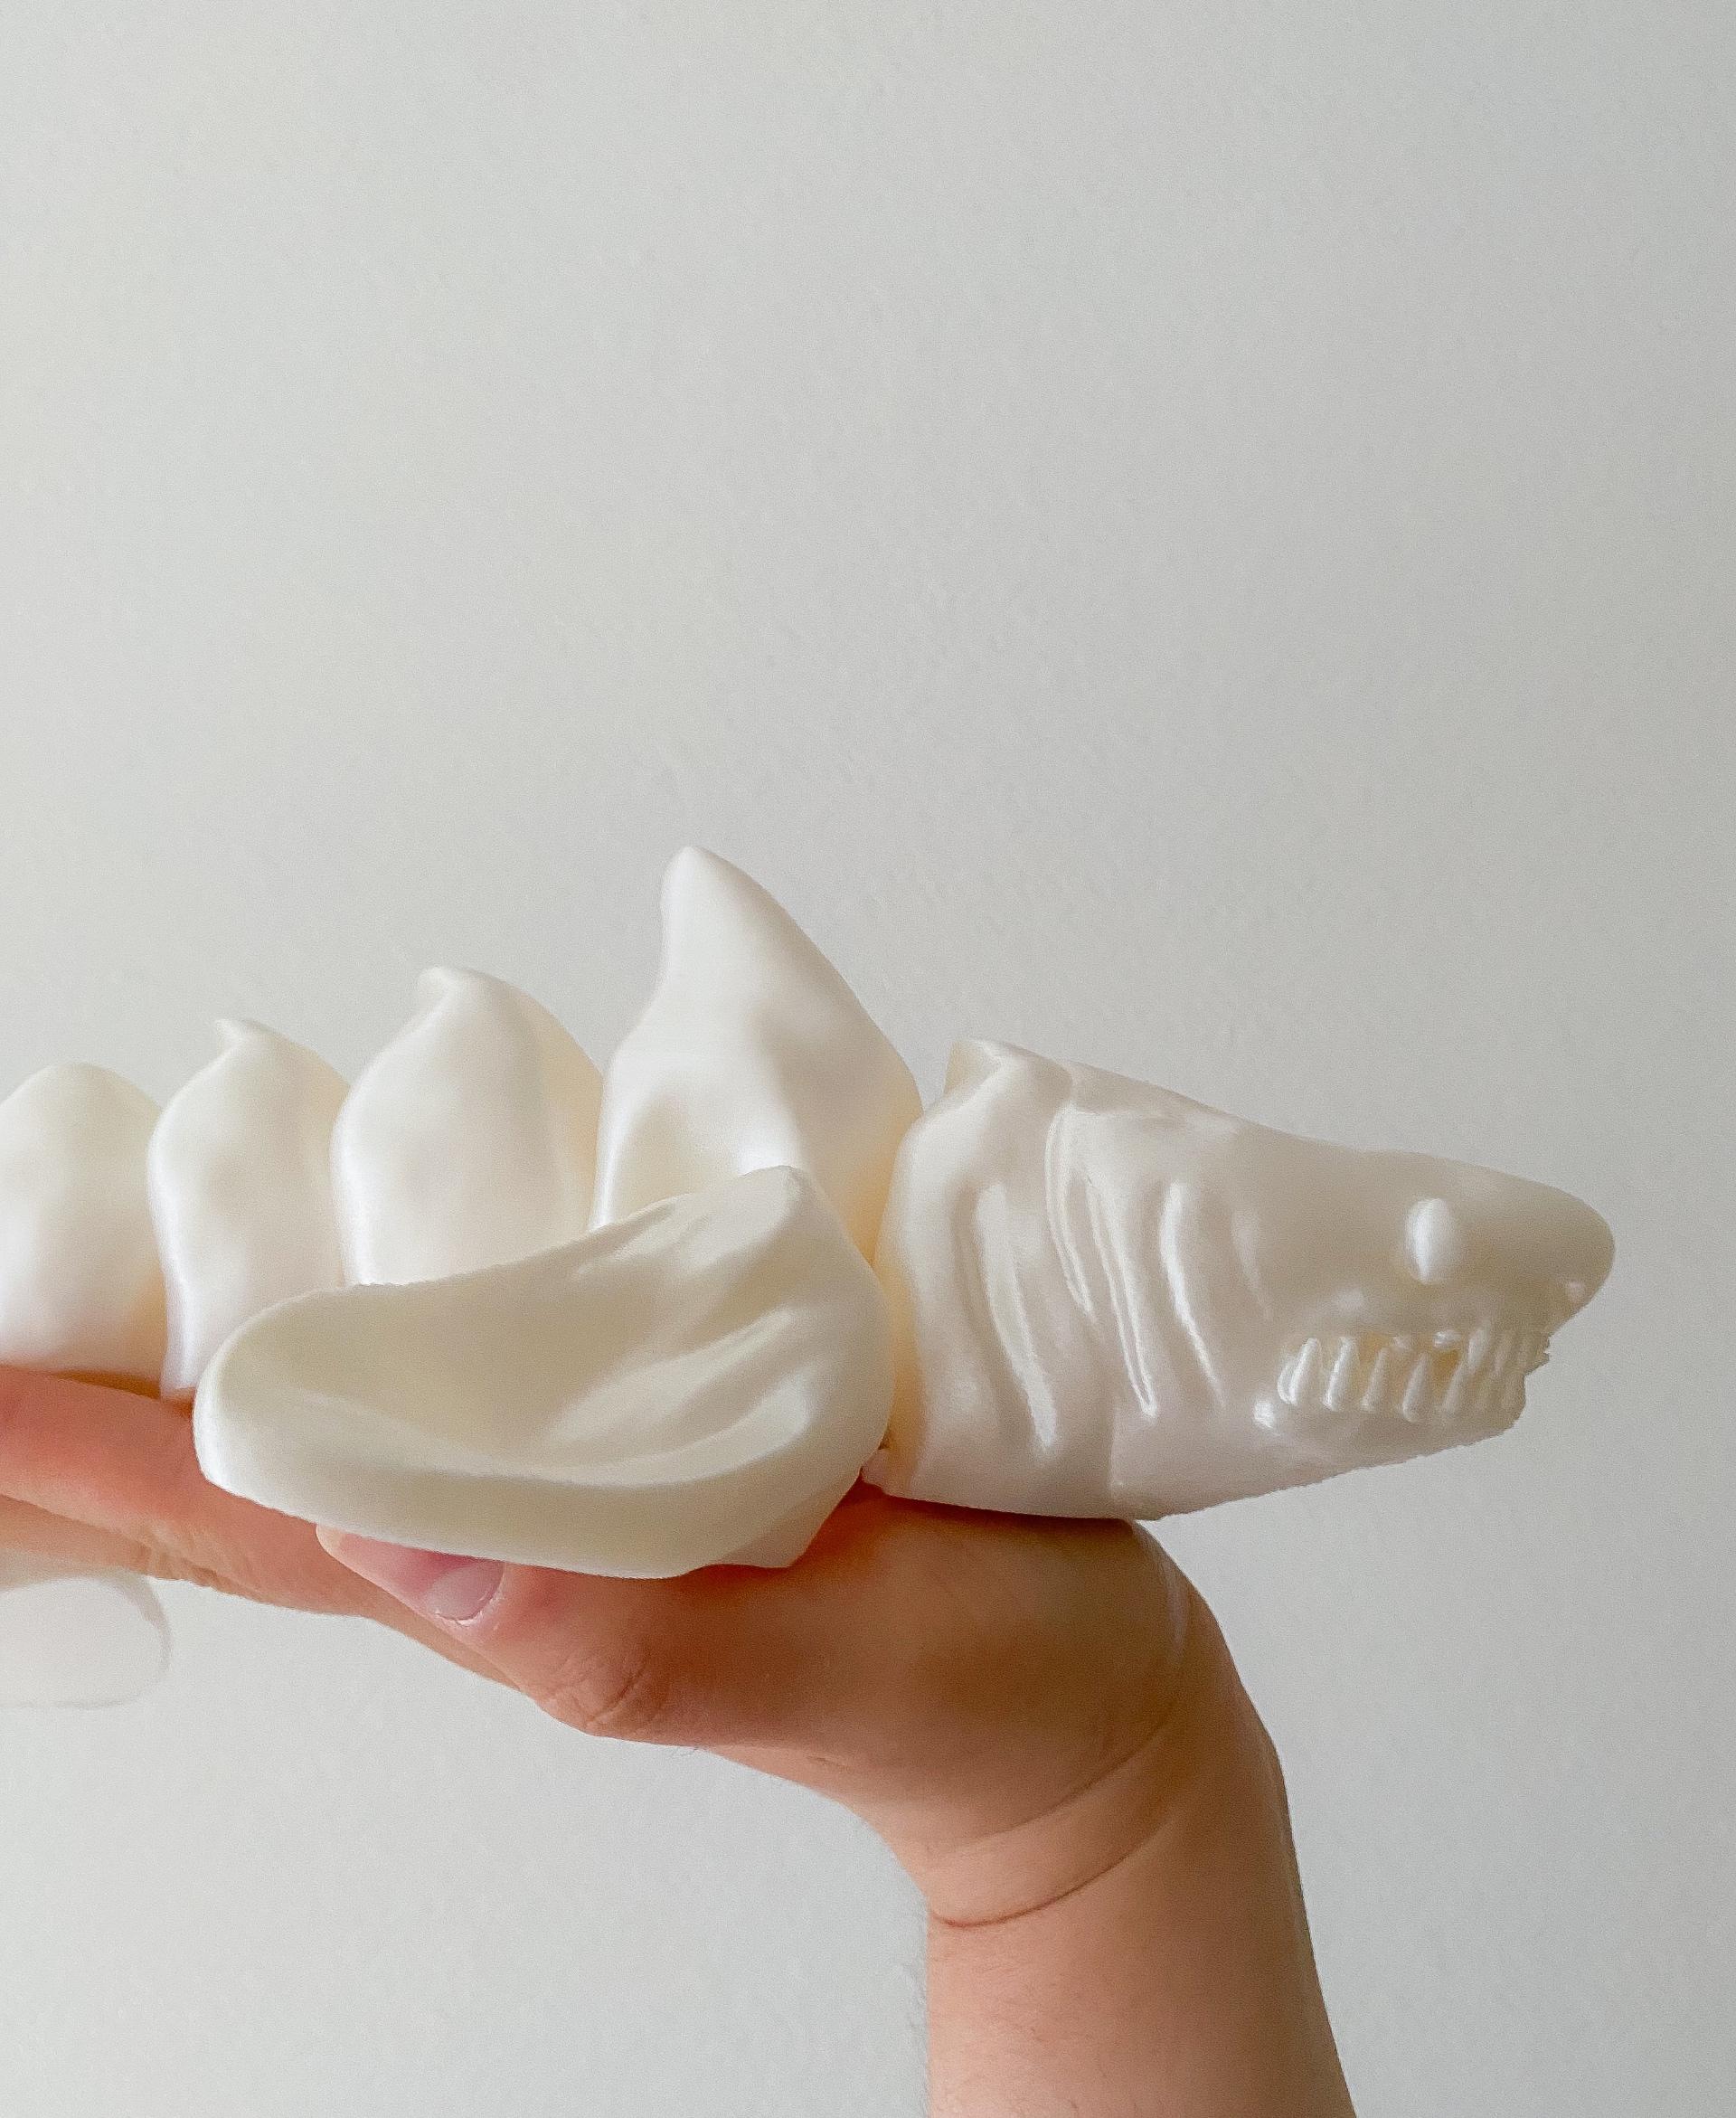 Rattleshark  - Dangerous shark in 200%!
Polymaker filament. - 3d model